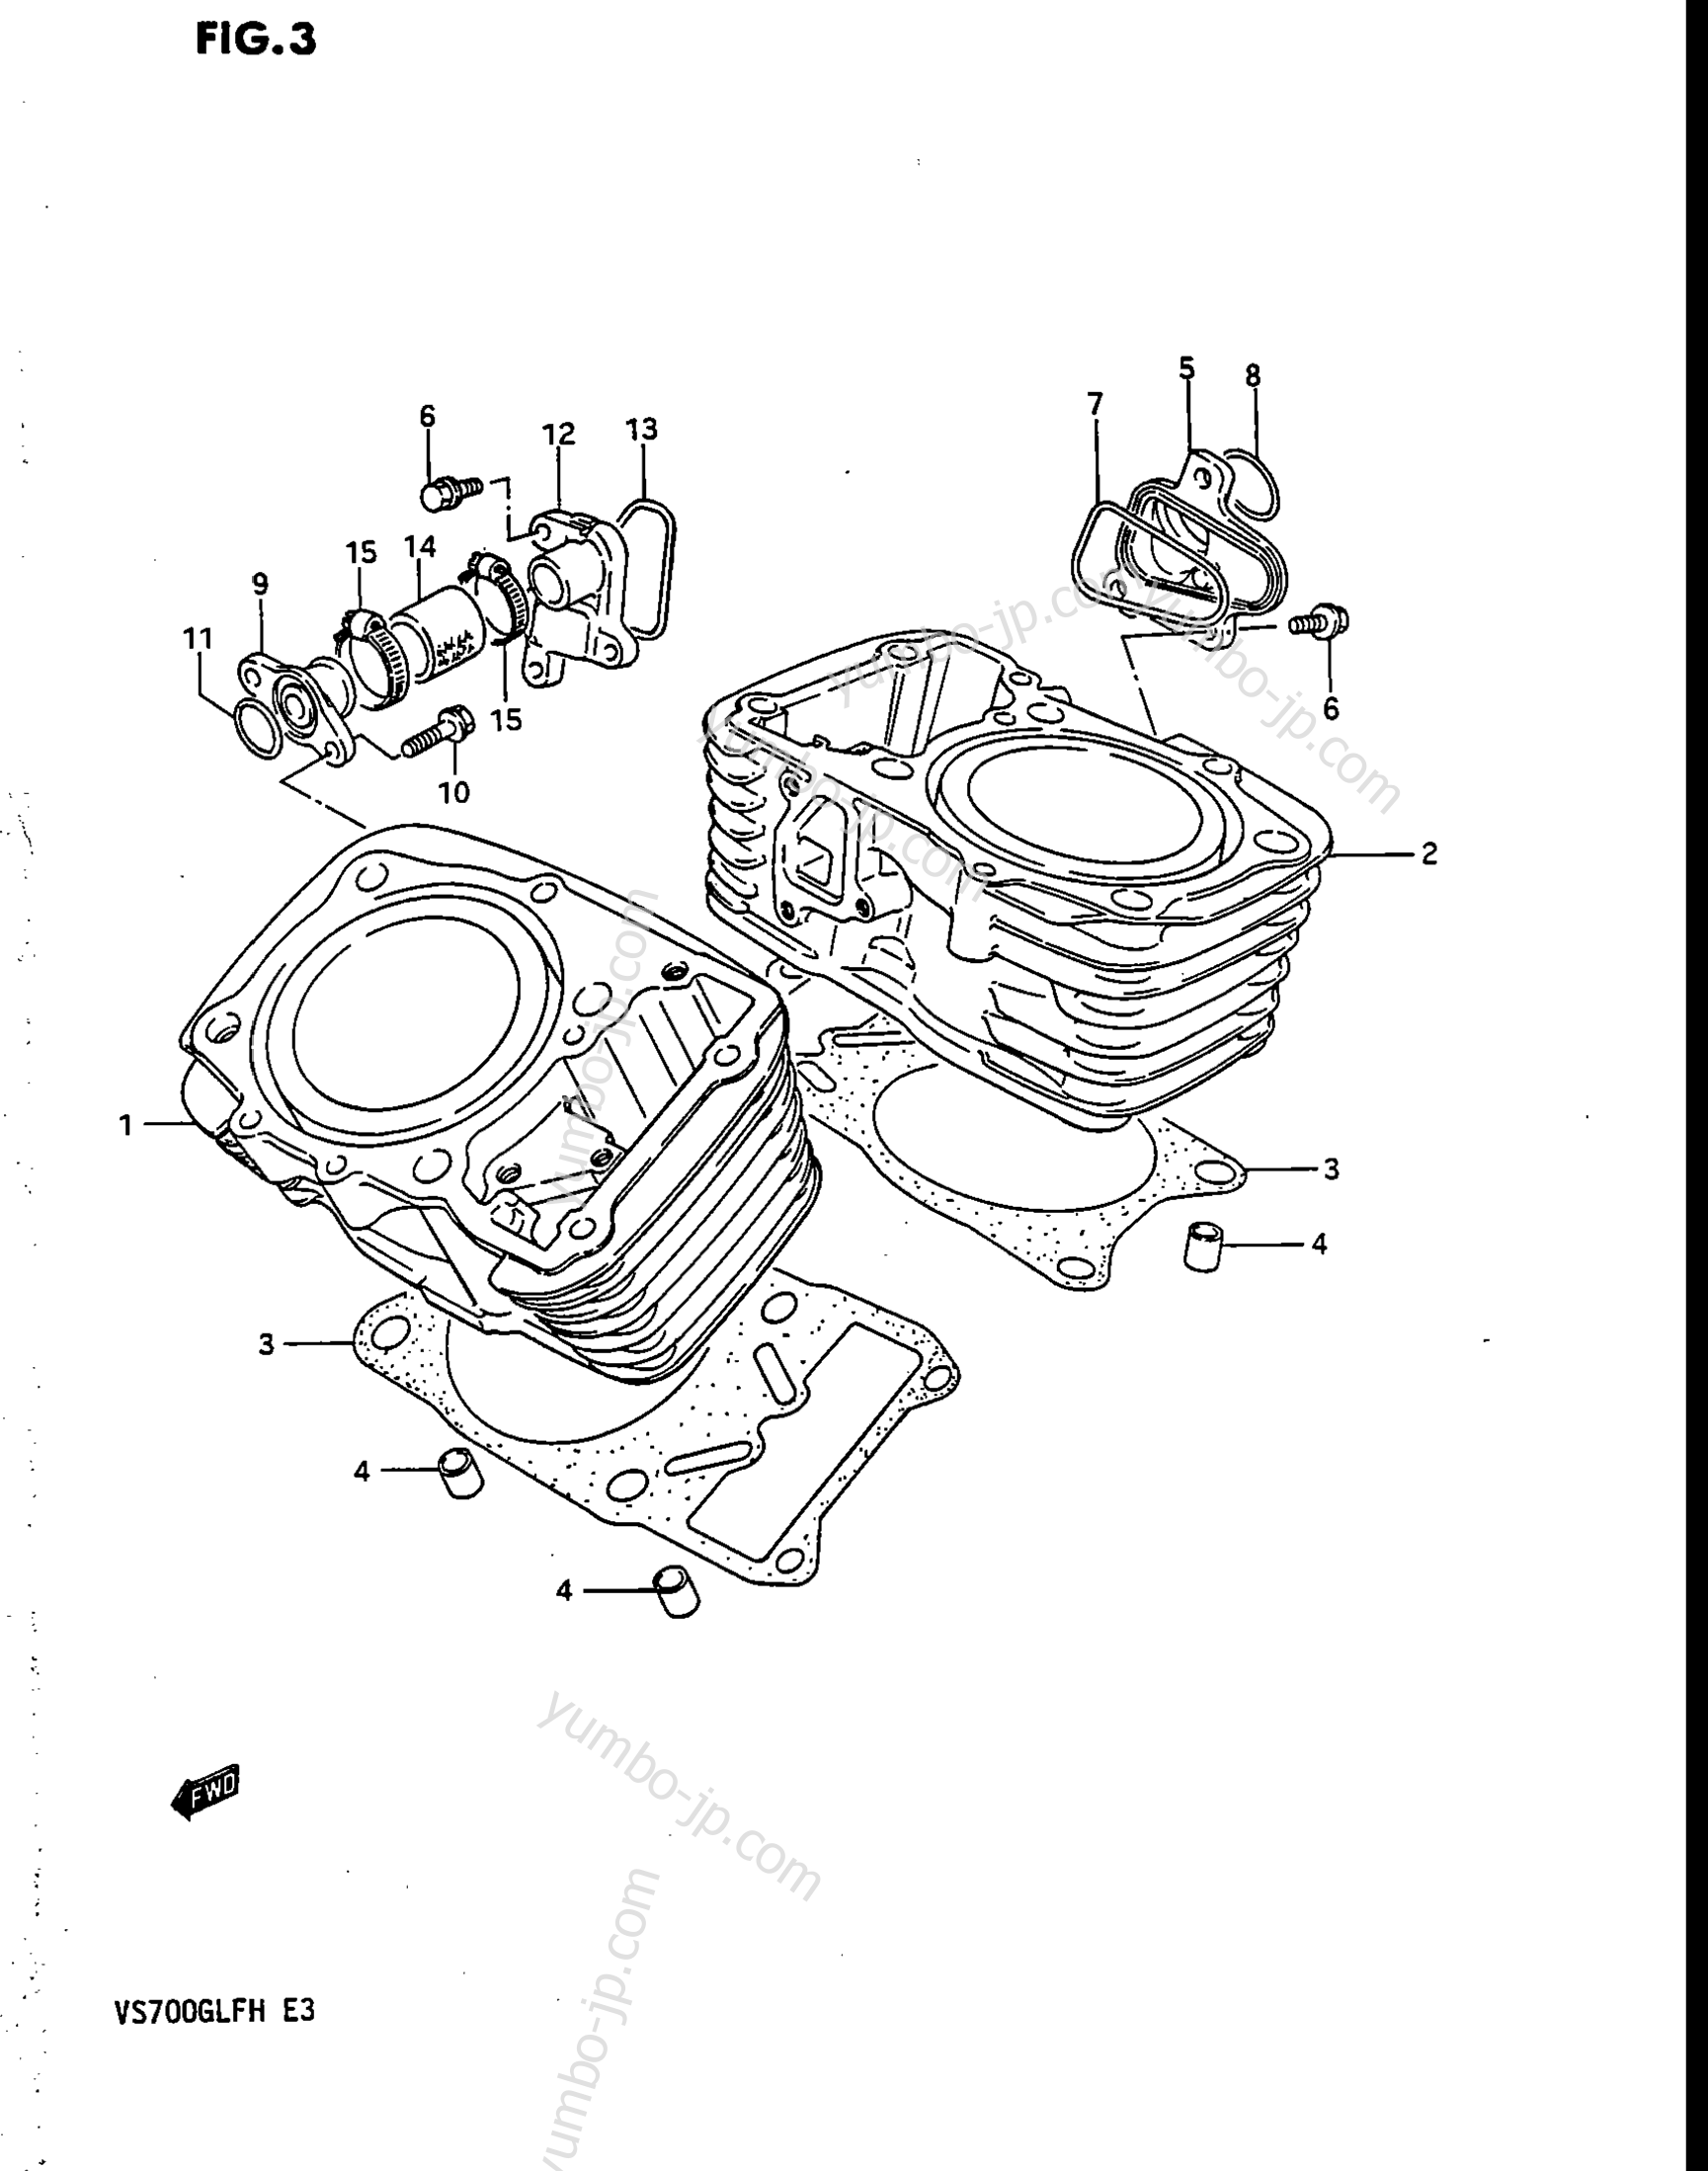 CYLINDER for motorcycles SUZUKI Intruder (VS700GLEP) 1987 year